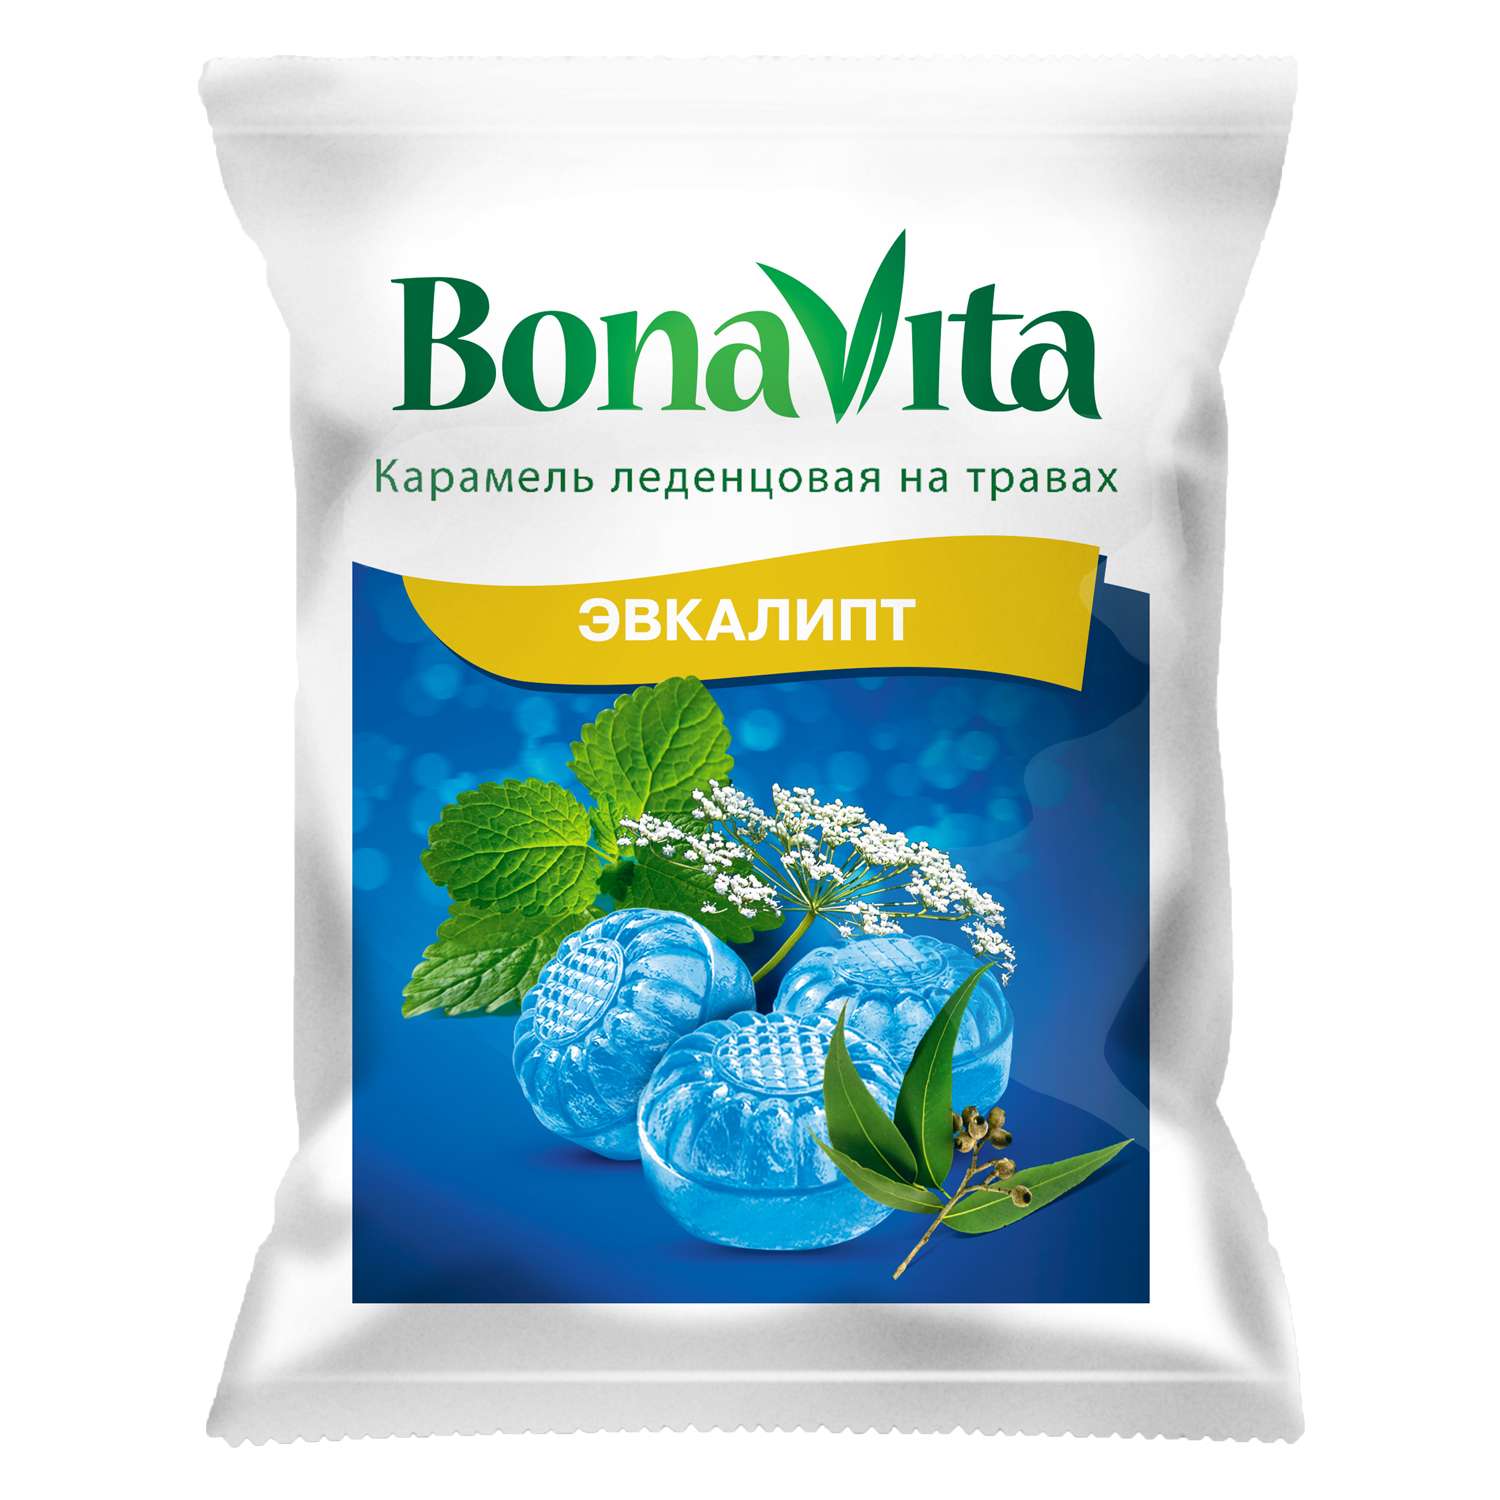 Биологически активная добавка Карамель BonaVita леденцовая эвкалипт с витамином С на травах 60г - фото 1